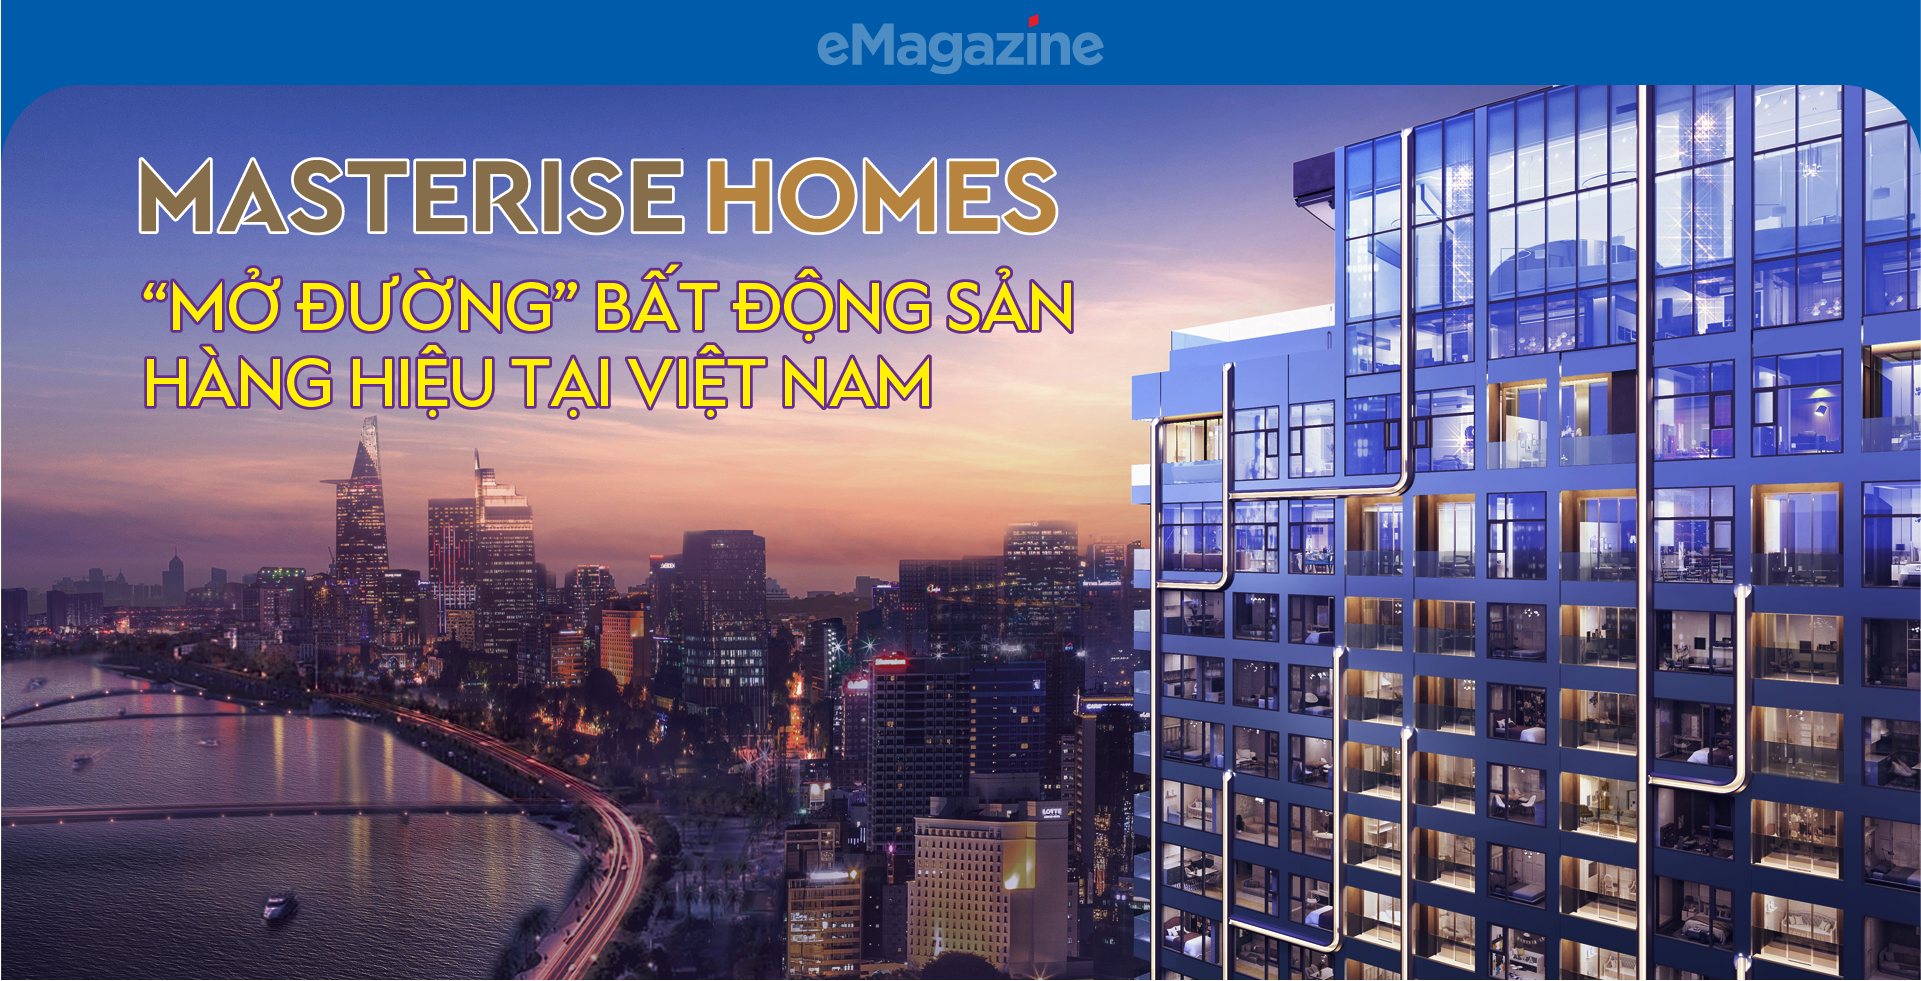 Masterise Homes “mở đường” bất động sản hàng hiệu tại Việt Nam - Ảnh 1